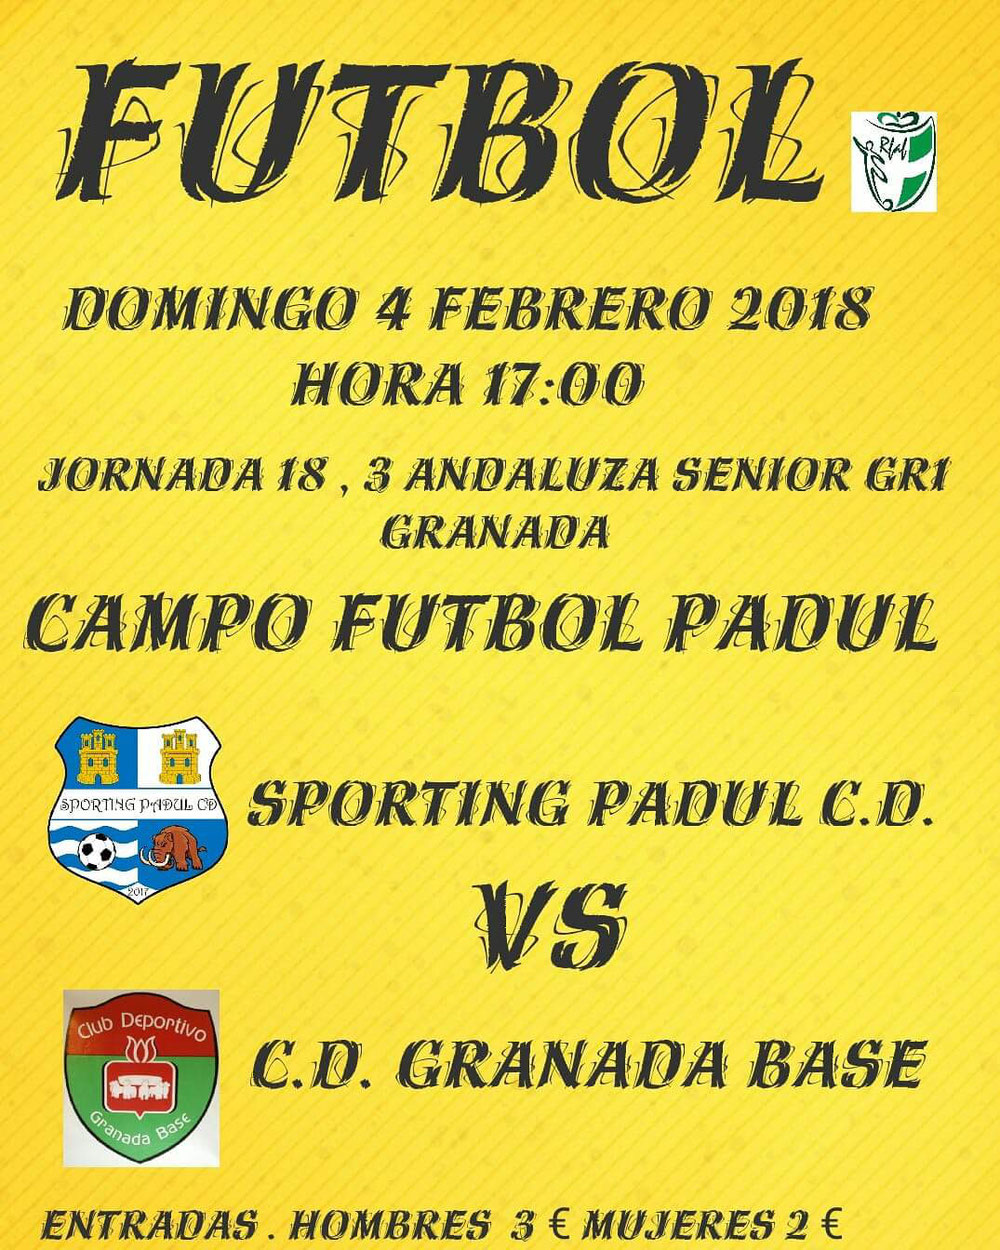 Sporting Padul CD vs Granada base CD